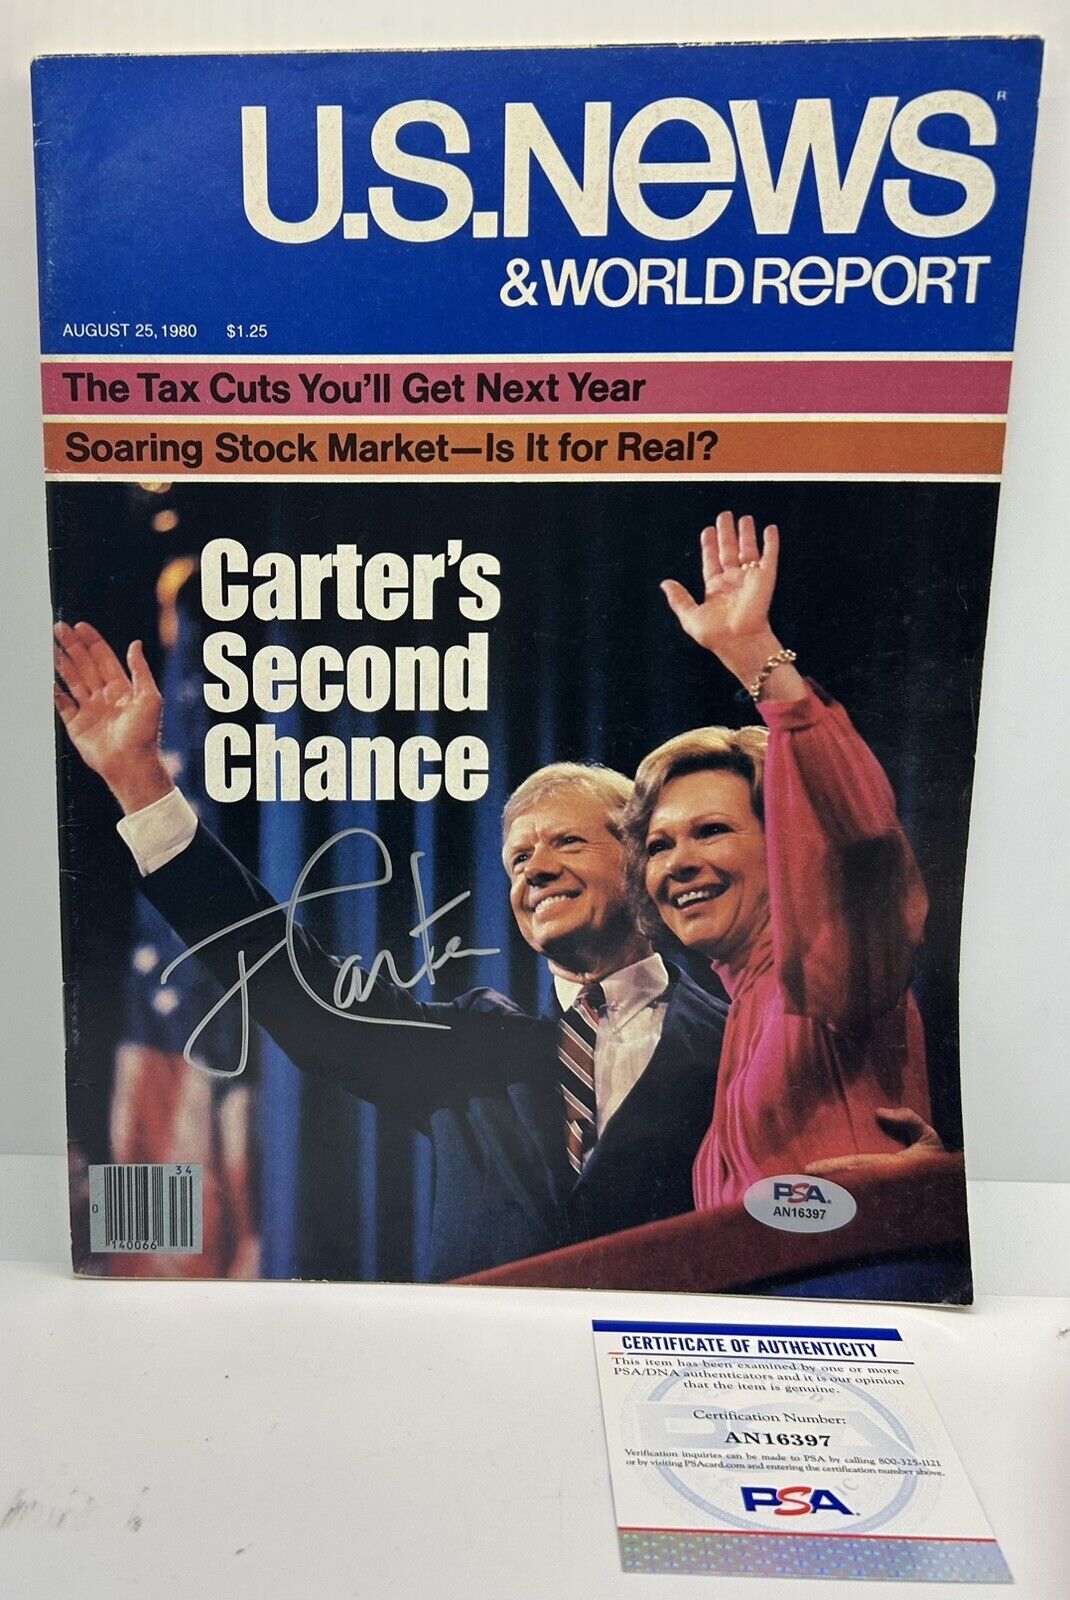 Jimmy Carter Signed 1980 US NEWS Magazine Autographed POTUS Full Issue PSA COA